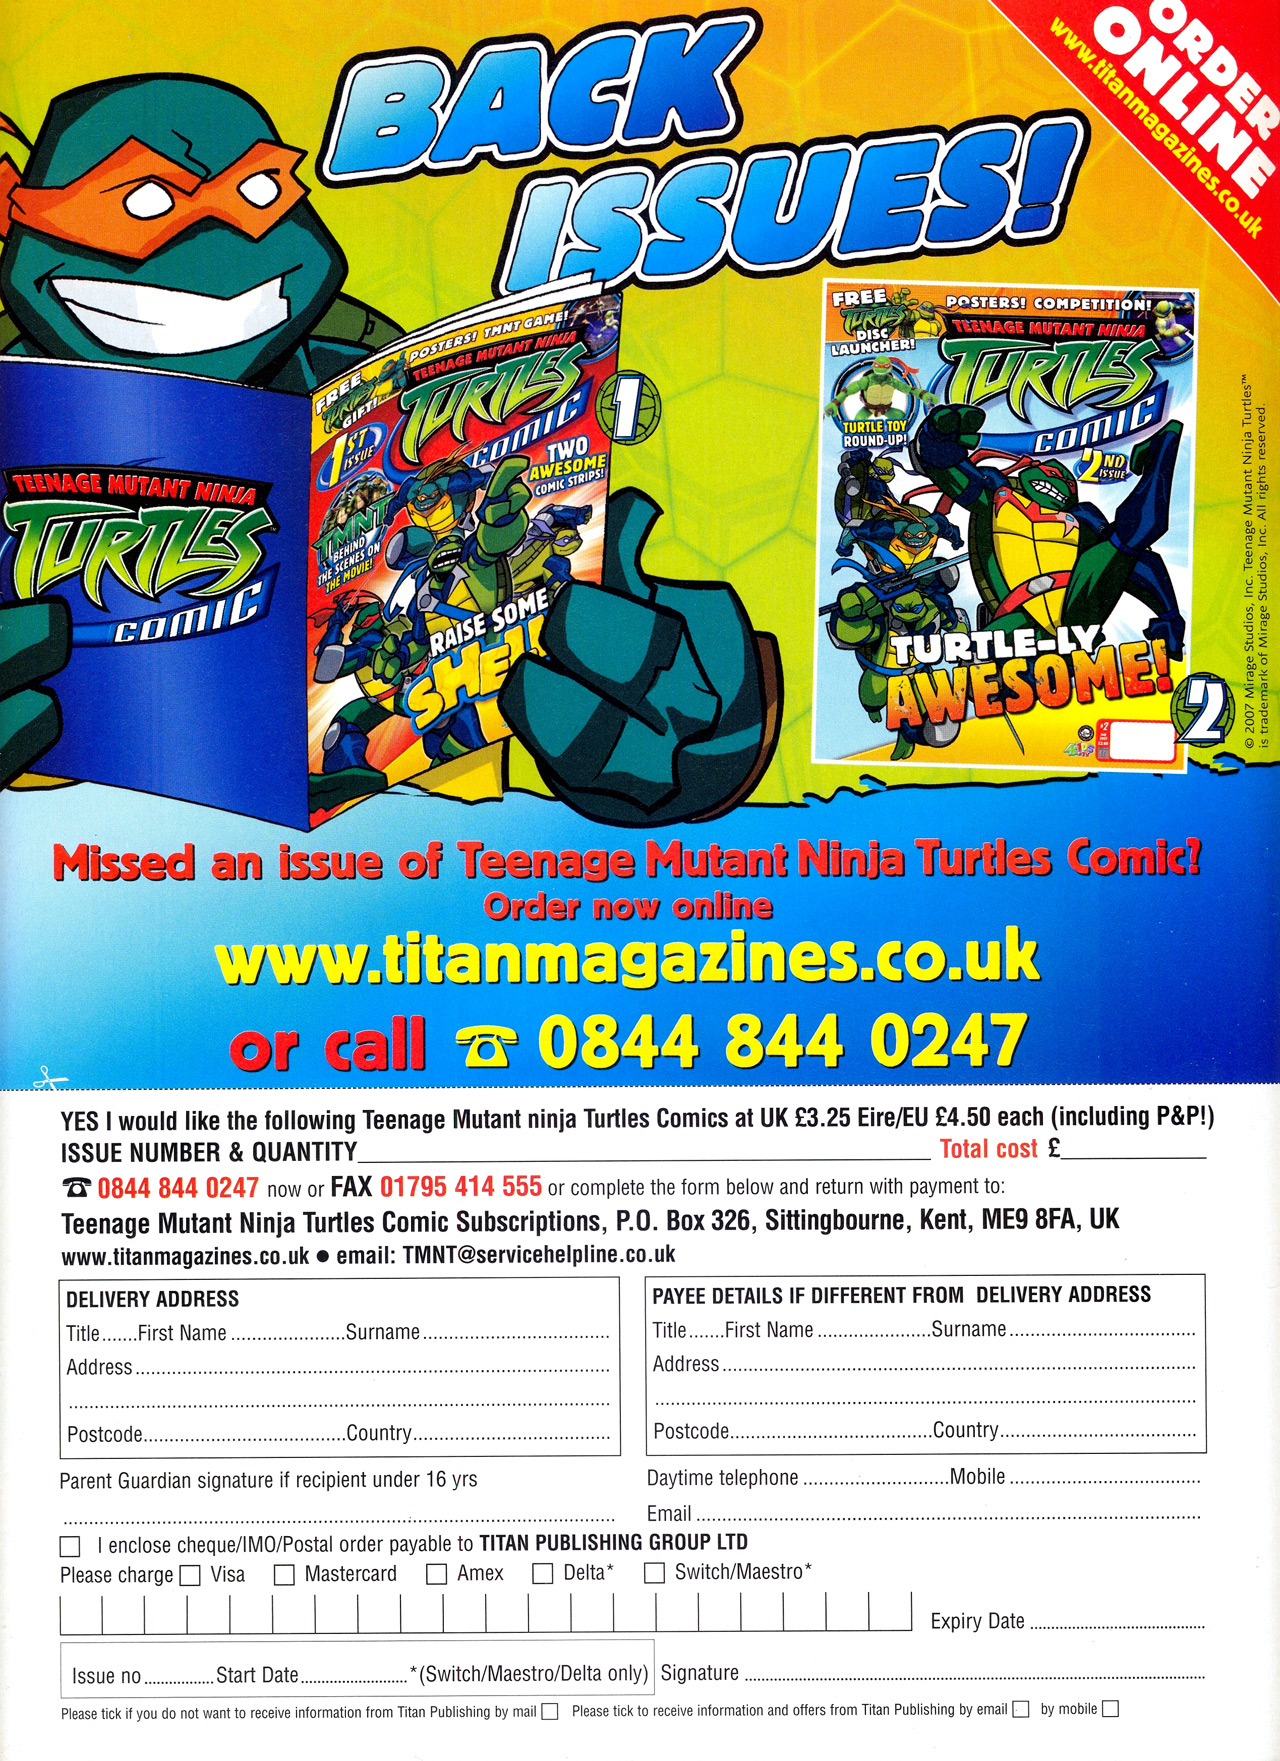 Read online Teenage Mutant Ninja Turtles Comic comic -  Issue #3 - 36